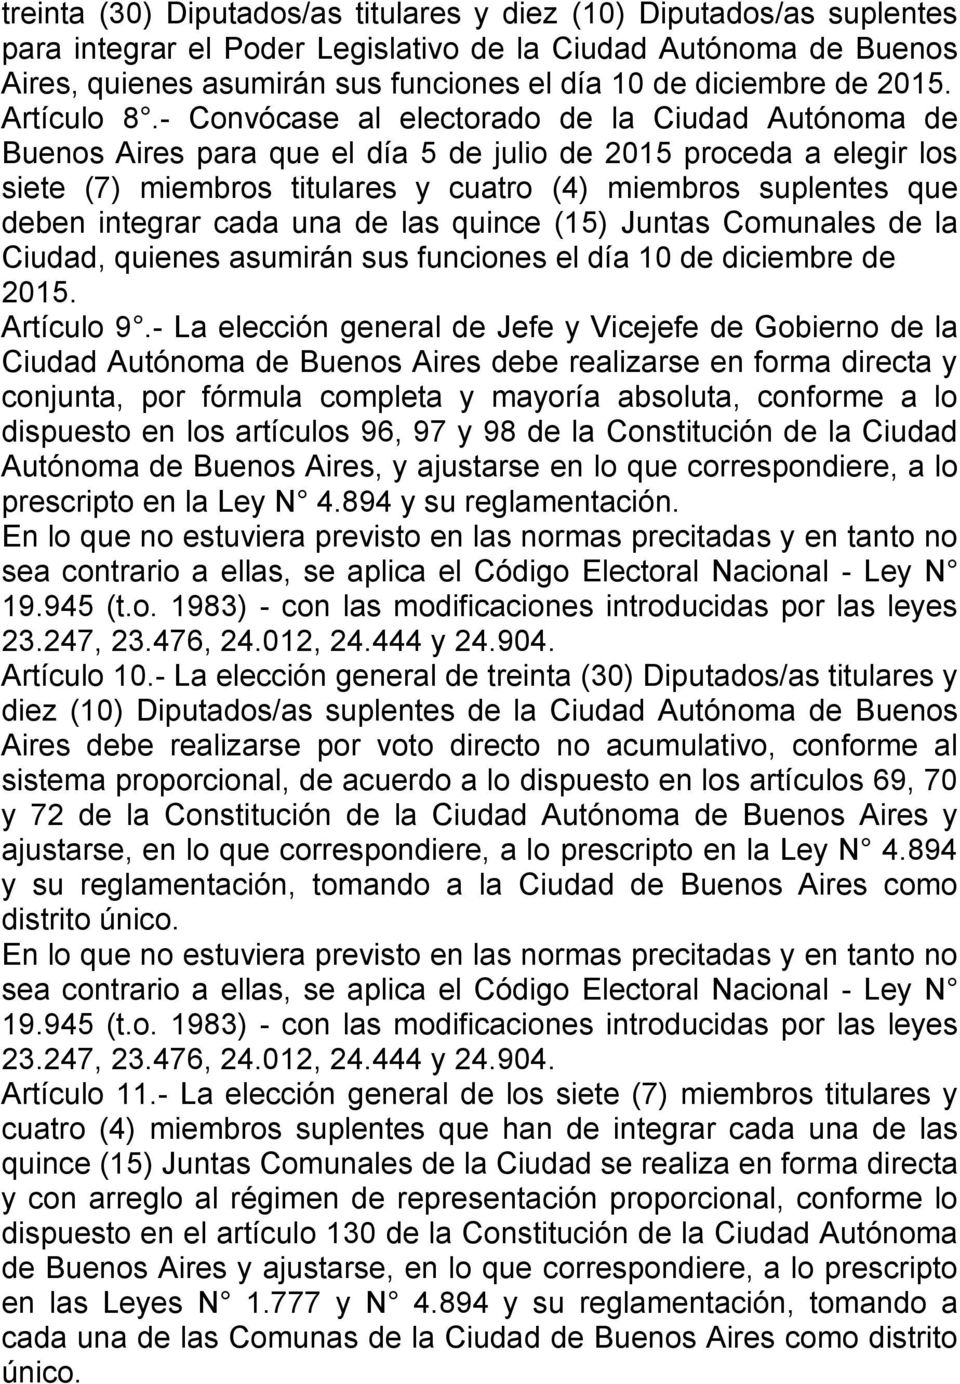 - Convócase al electorado de la Ciudad Autónoma de Buenos Aires para que el día 5 de julio de 2015 proceda a elegir los siete (7) miembros titulares y cuatro (4) miembros suplentes que deben integrar